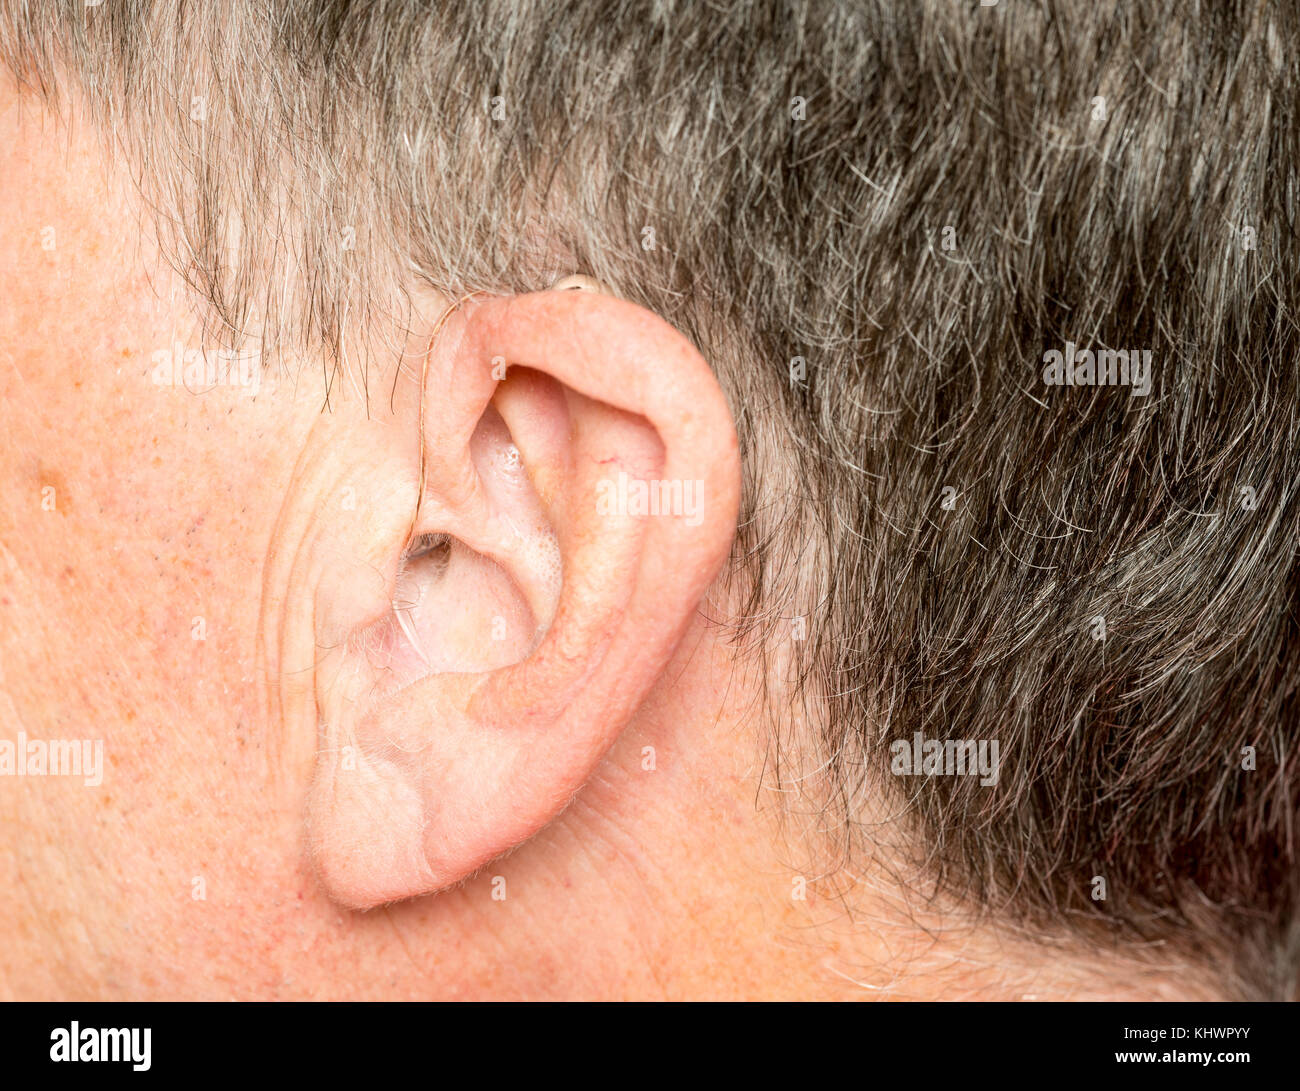 Nahaufnahme von einem winzigen modernen Hörgerät hinter dem Ohr Stockfoto